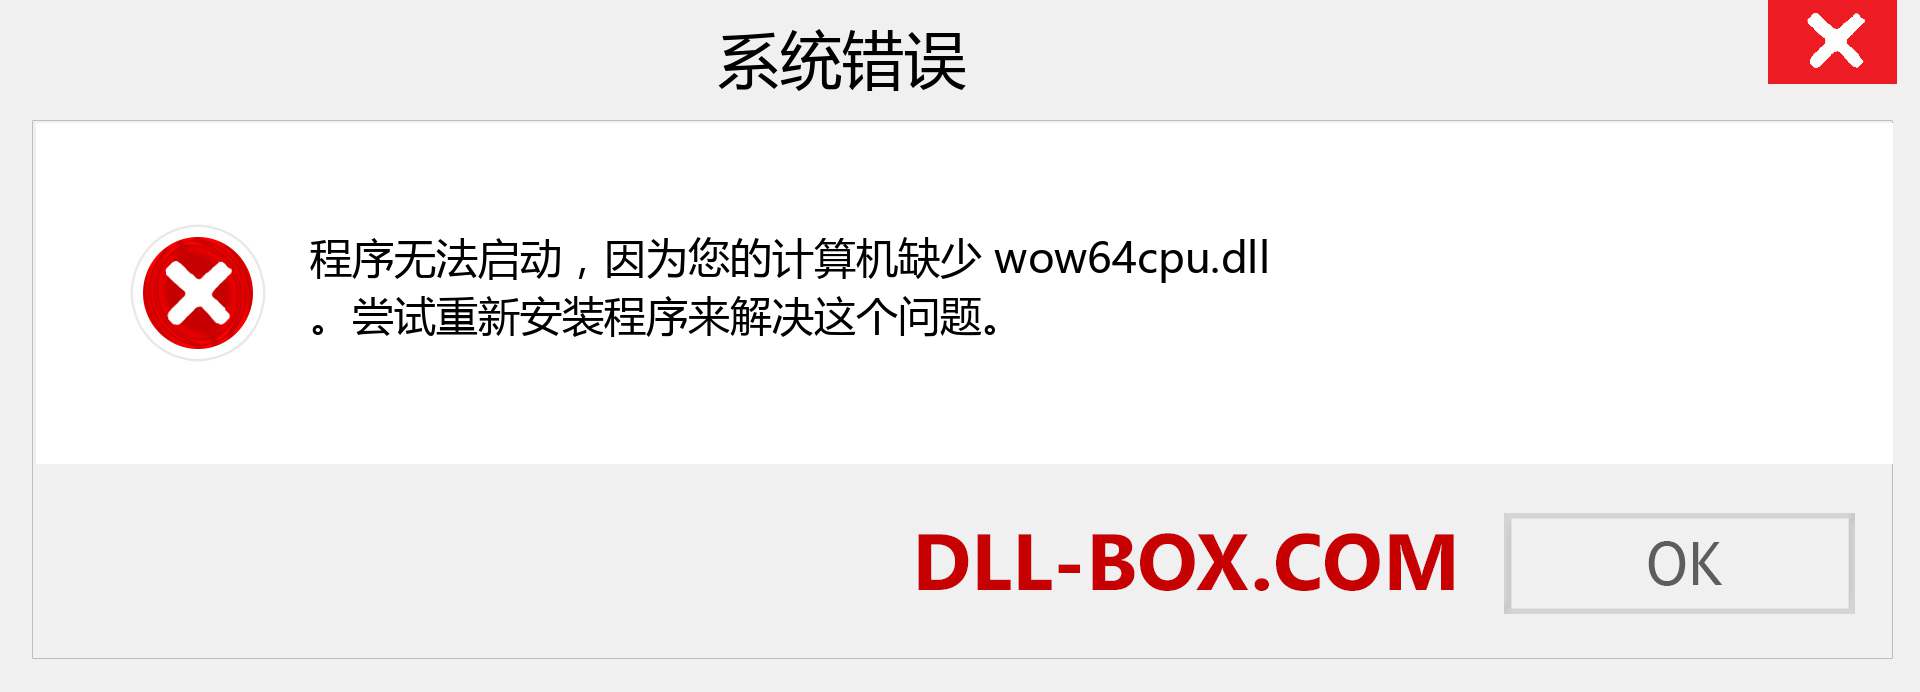 wow64cpu.dll 文件丢失？。 适用于 Windows 7、8、10 的下载 - 修复 Windows、照片、图像上的 wow64cpu dll 丢失错误